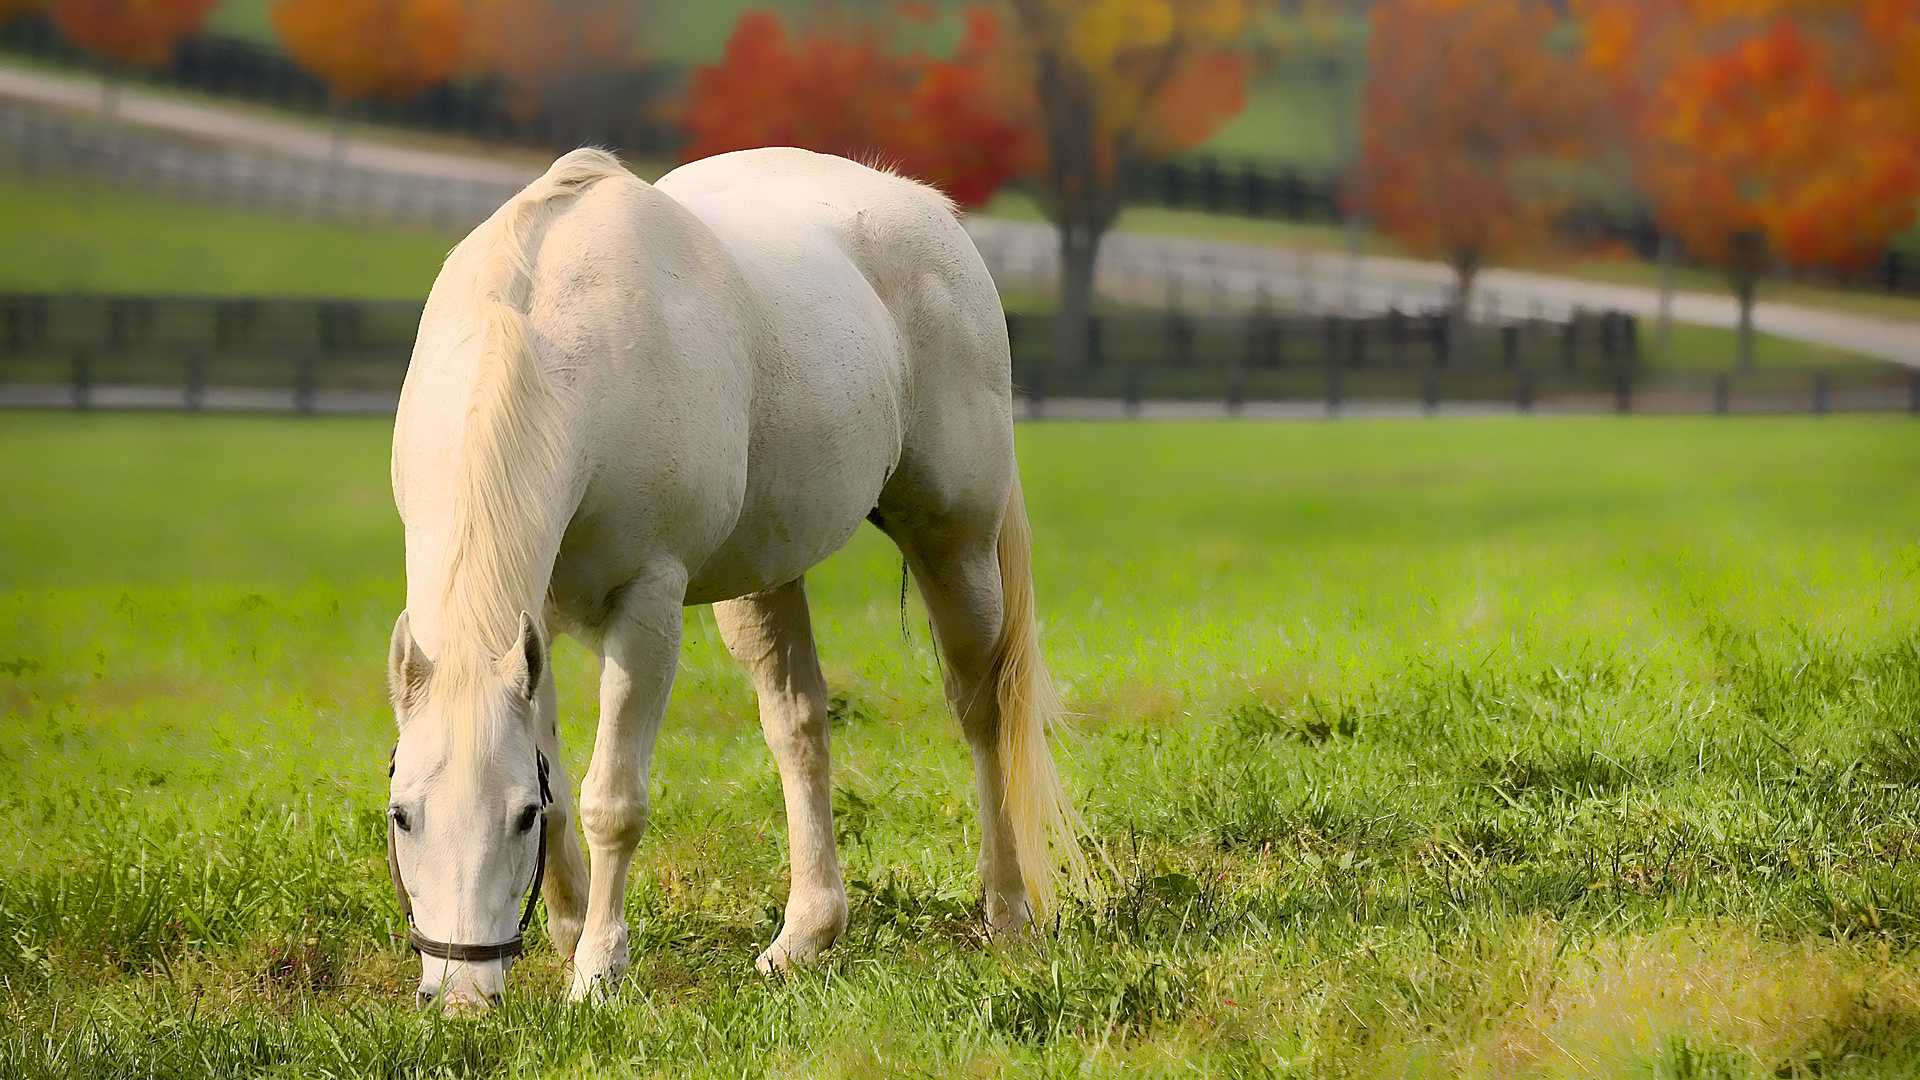 Horses in Autumn Desktop Wallpaper - WallpaperSafari